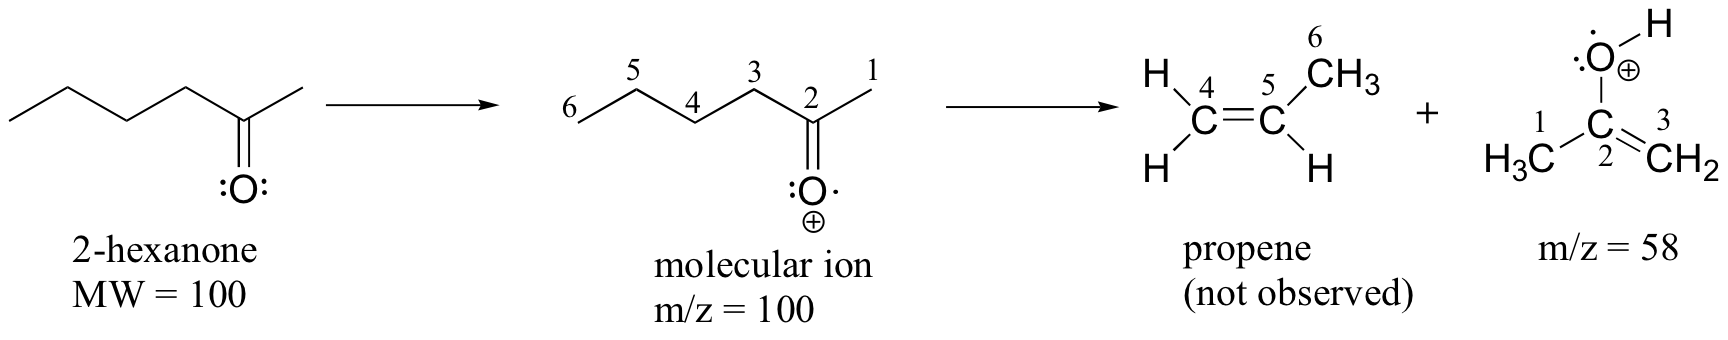 2-hexano (M W= 100). Flecha al ion molecular (un electrón que falta en el oxígeno) con m/z= 100. La cadena de carbono está numerada. Va al propeno elaborado a partir de los carbonos 4 al 6 (no detectado) y una molécula hecha de los carbonos del 1 al 3 (doble enlace entre los carbonos 2 y 3; el carbonilo se convierte en un grupo alcohol y el oxígeno tiene una carga positiva) con m/z = 53.